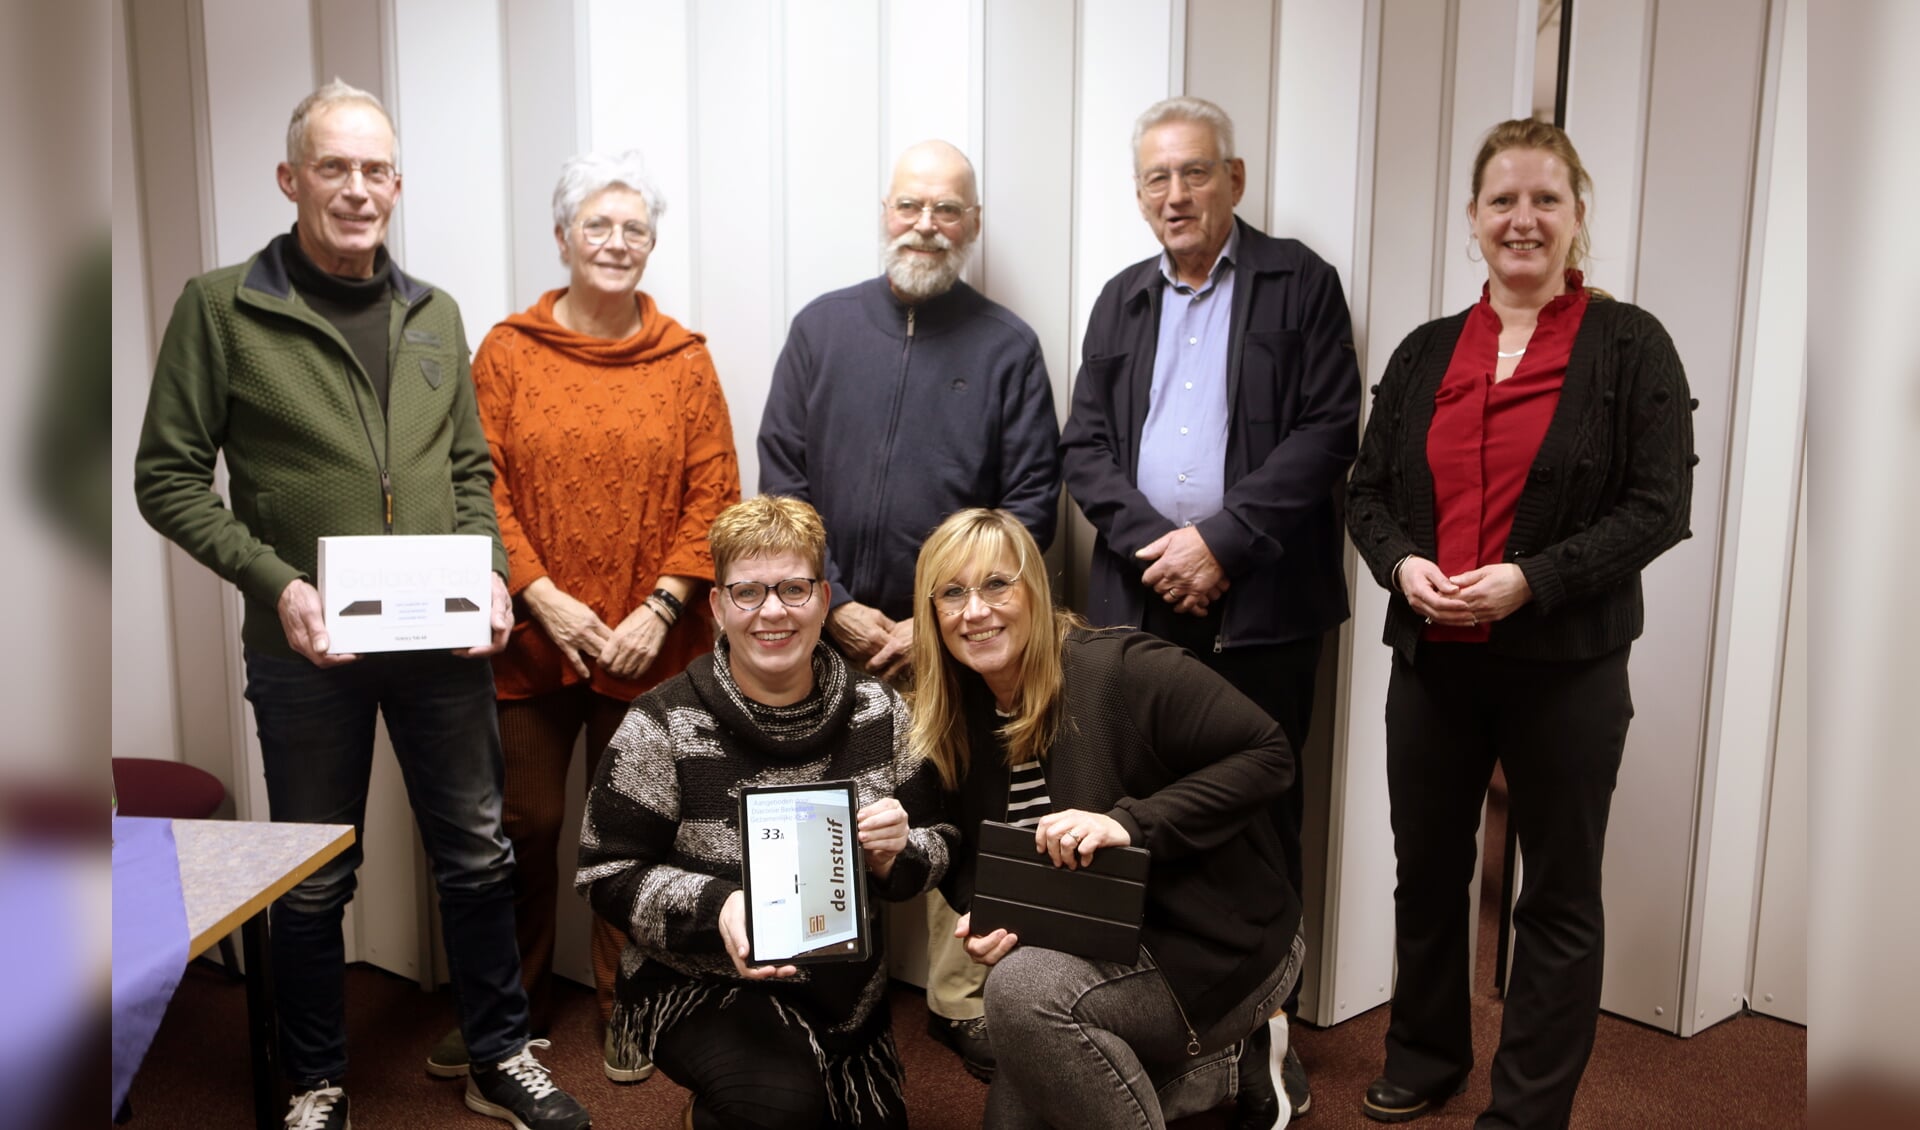 De circa 30 vrijwilligers hebben door de gift van de Diaconie tablets voor het taalonderwijs aan niet-Nederlandstalige inwoners van Berkelland. Foto: Jaime Lebbink